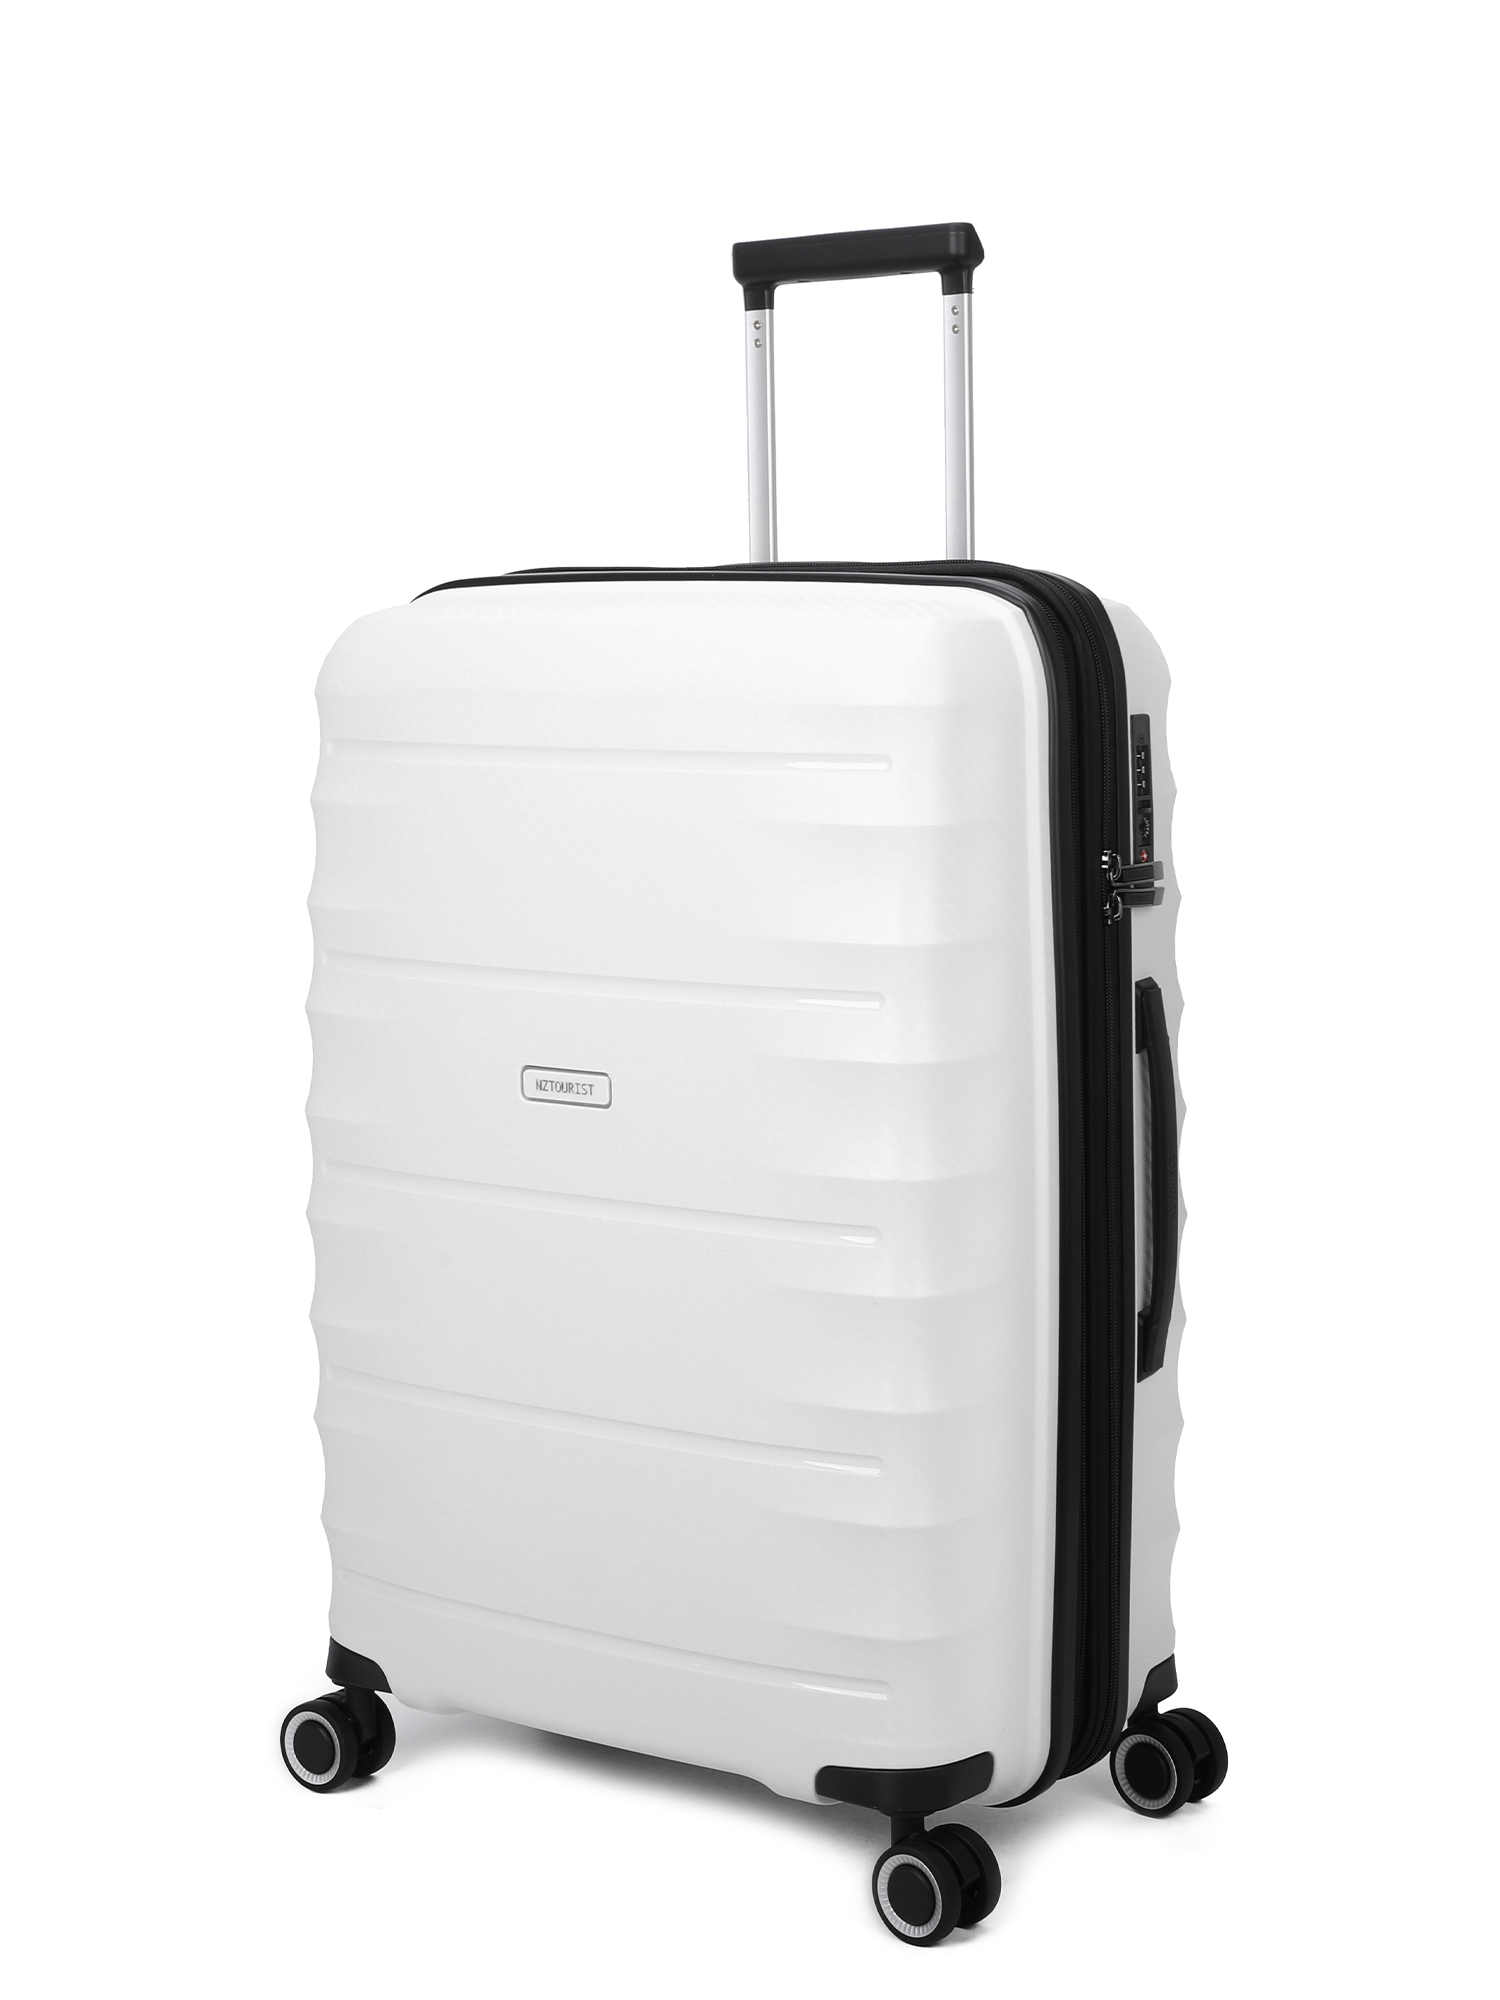 NZTourist Pro Traveller 65cm Suitcase - Blue